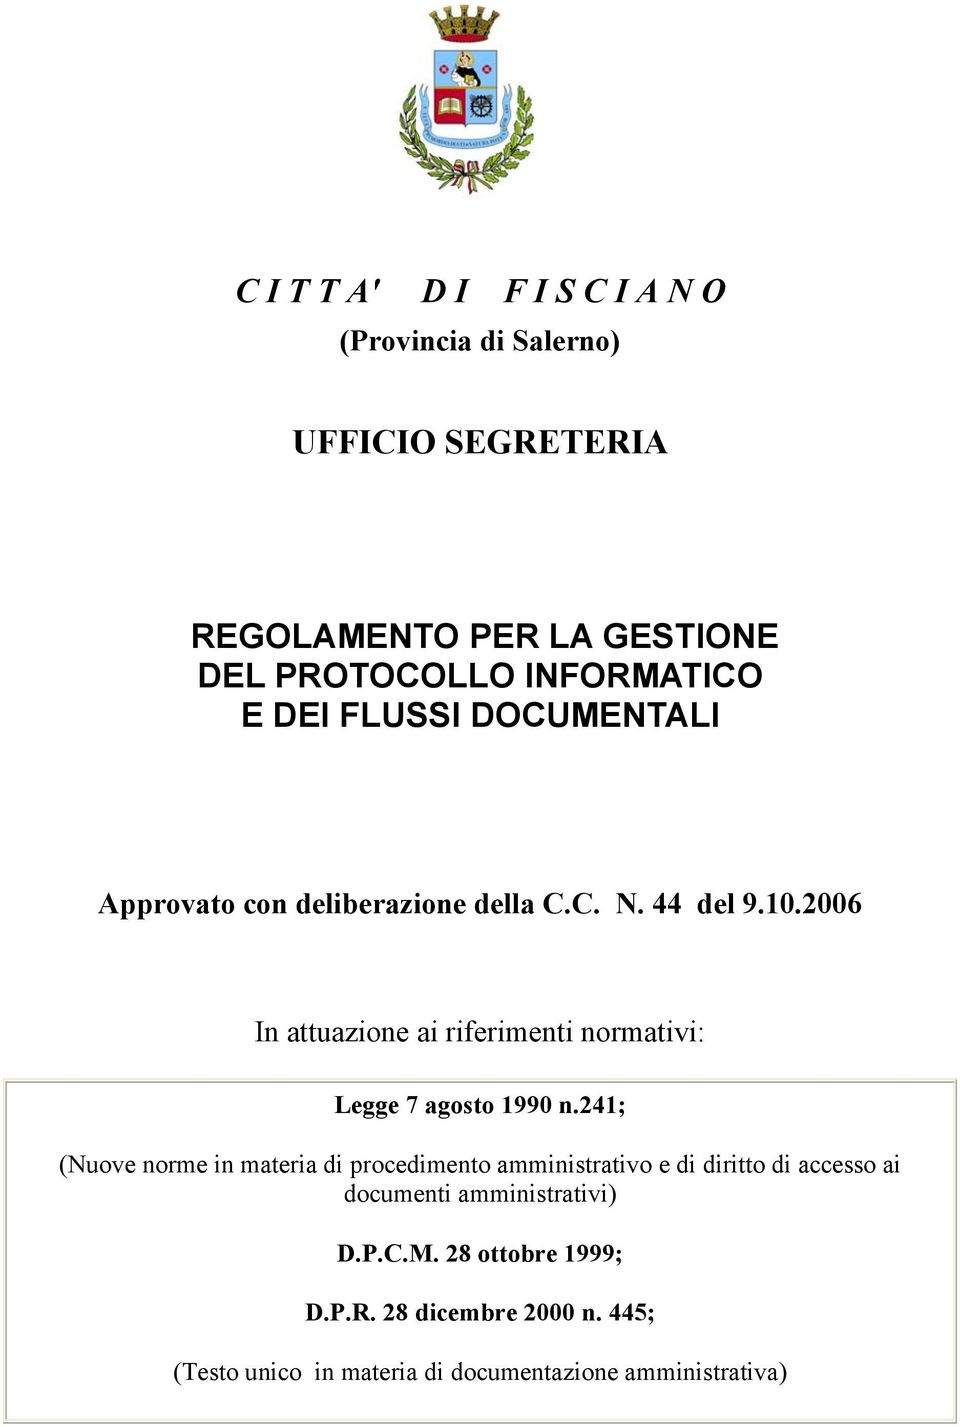 2006 In attuazione ai riferimenti normativi: Legge 7 agosto 1990 n.